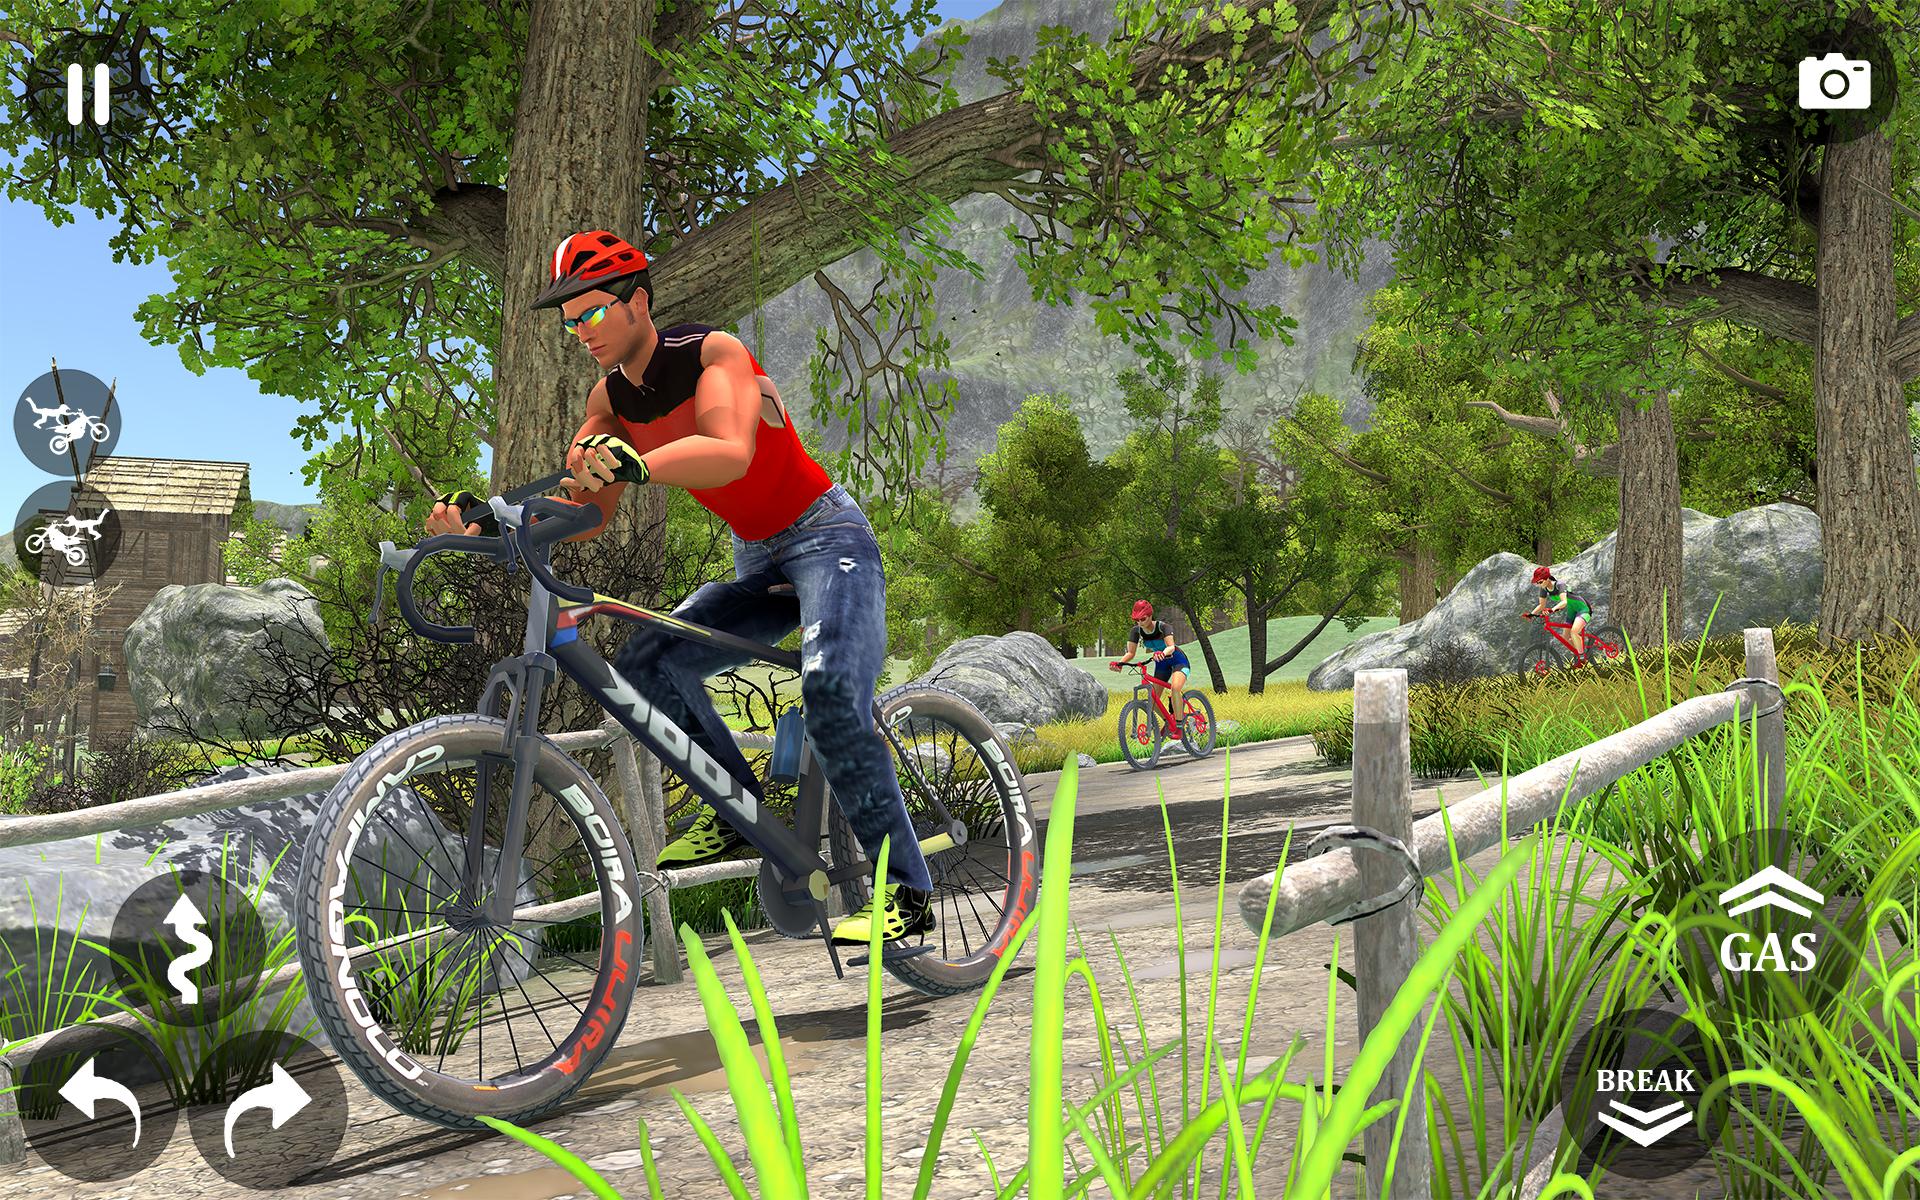 لعبة الدراجة الجبلية دراجة BMX APK للاندرويد تنزيل